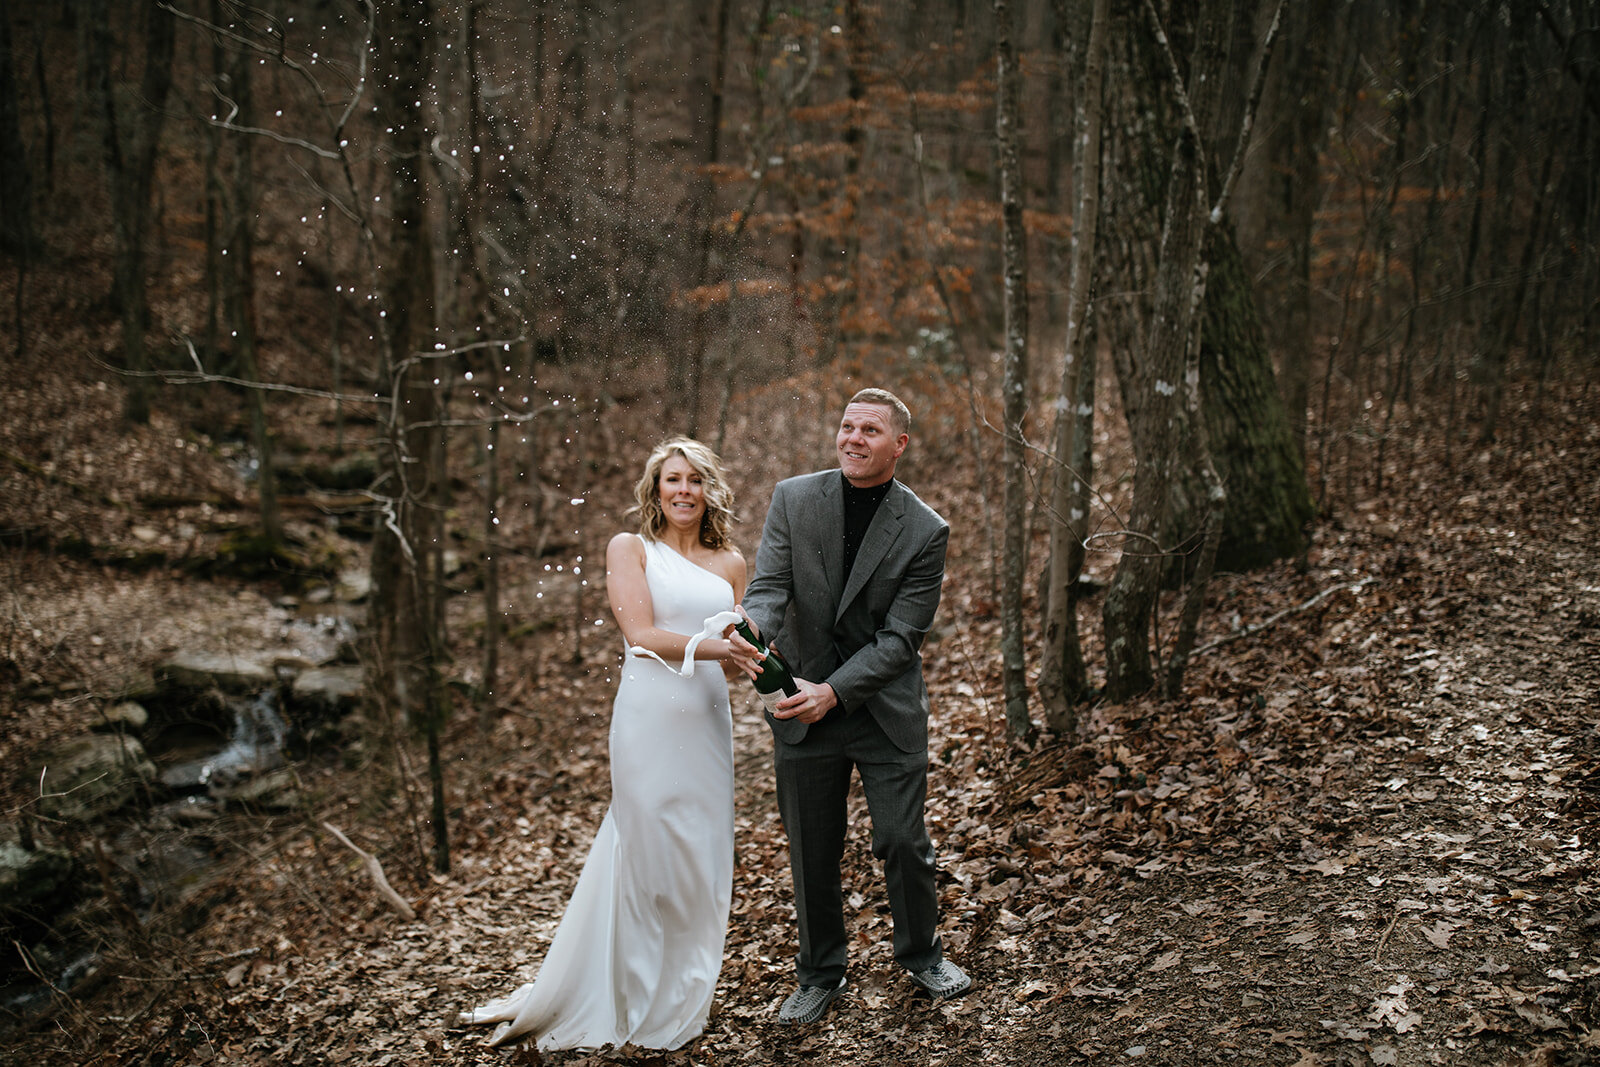 snoopers-rock-adventure-elopement-chattanooga-wedding-photographerfoster-falls-elopement-chattanooga-wedding-photographer-511_websize.jpg